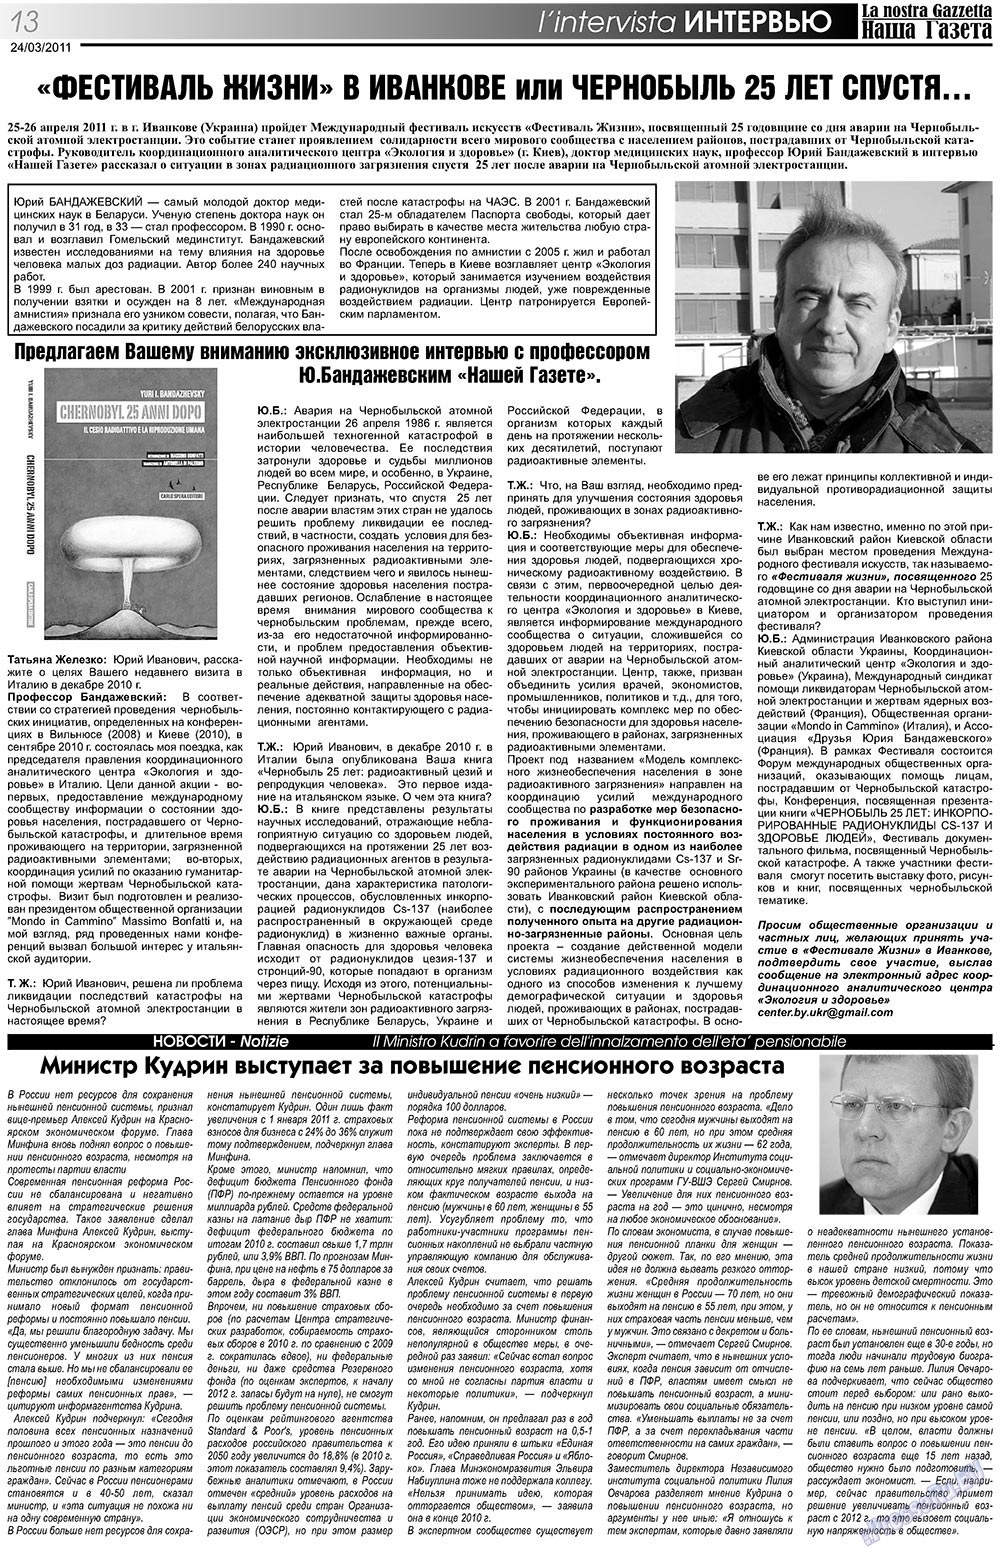 Наша Газета Италия, газета. 2011 №129 стр.13